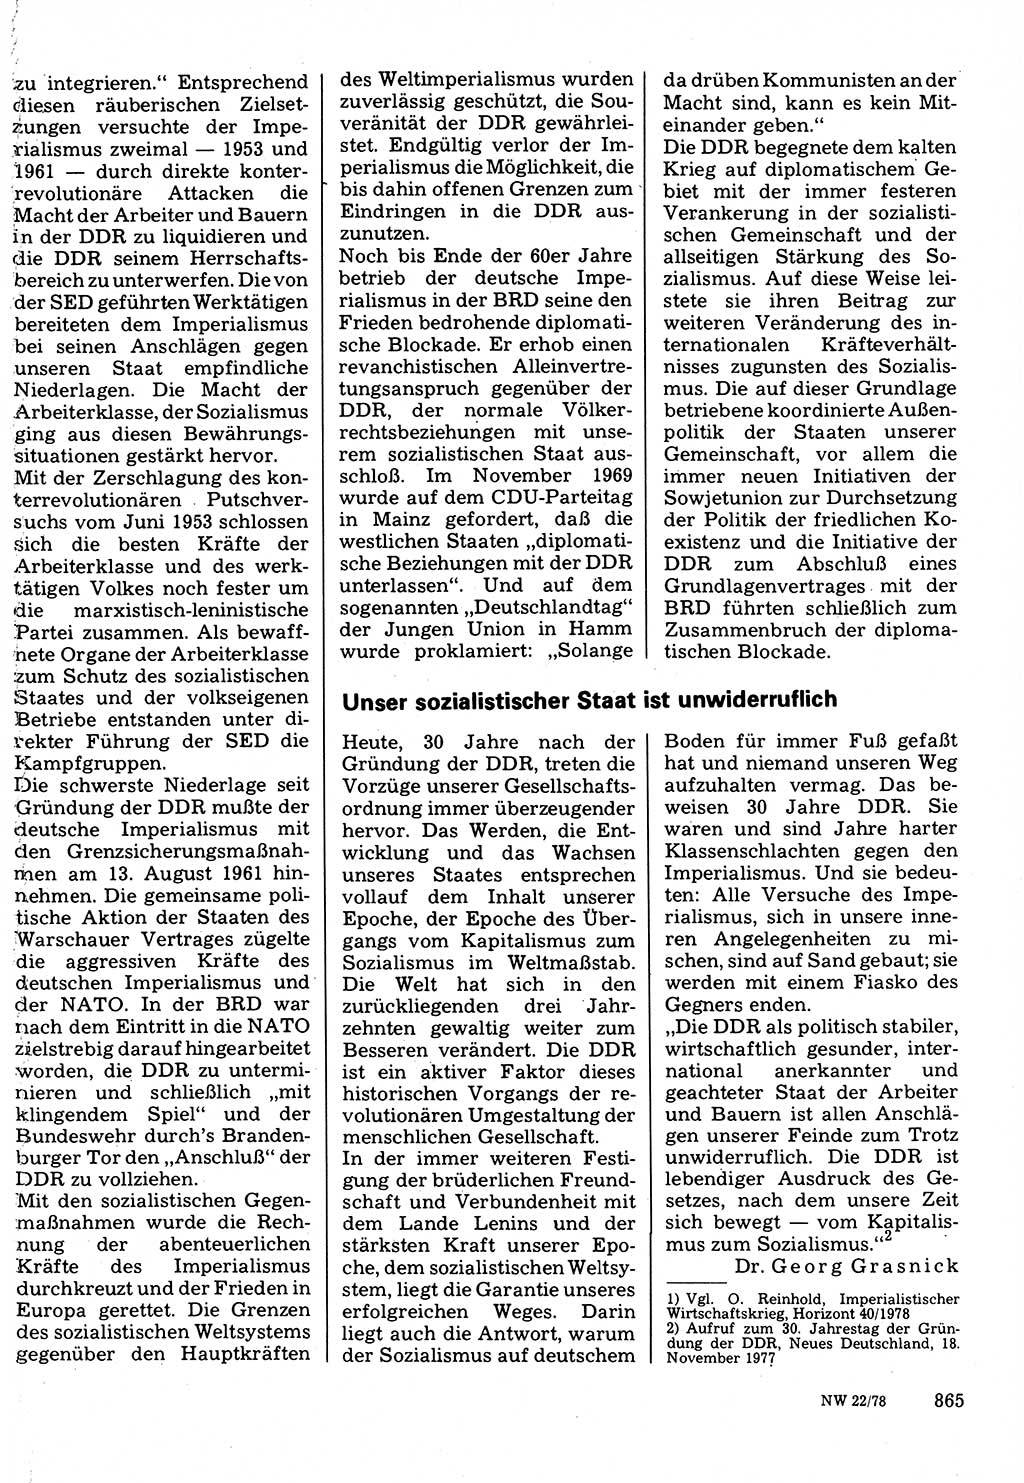 Neuer Weg (NW), Organ des Zentralkomitees (ZK) der SED (Sozialistische Einheitspartei Deutschlands) für Fragen des Parteilebens, 33. Jahrgang [Deutsche Demokratische Republik (DDR)] 1978, Seite 865 (NW ZK SED DDR 1978, S. 865)